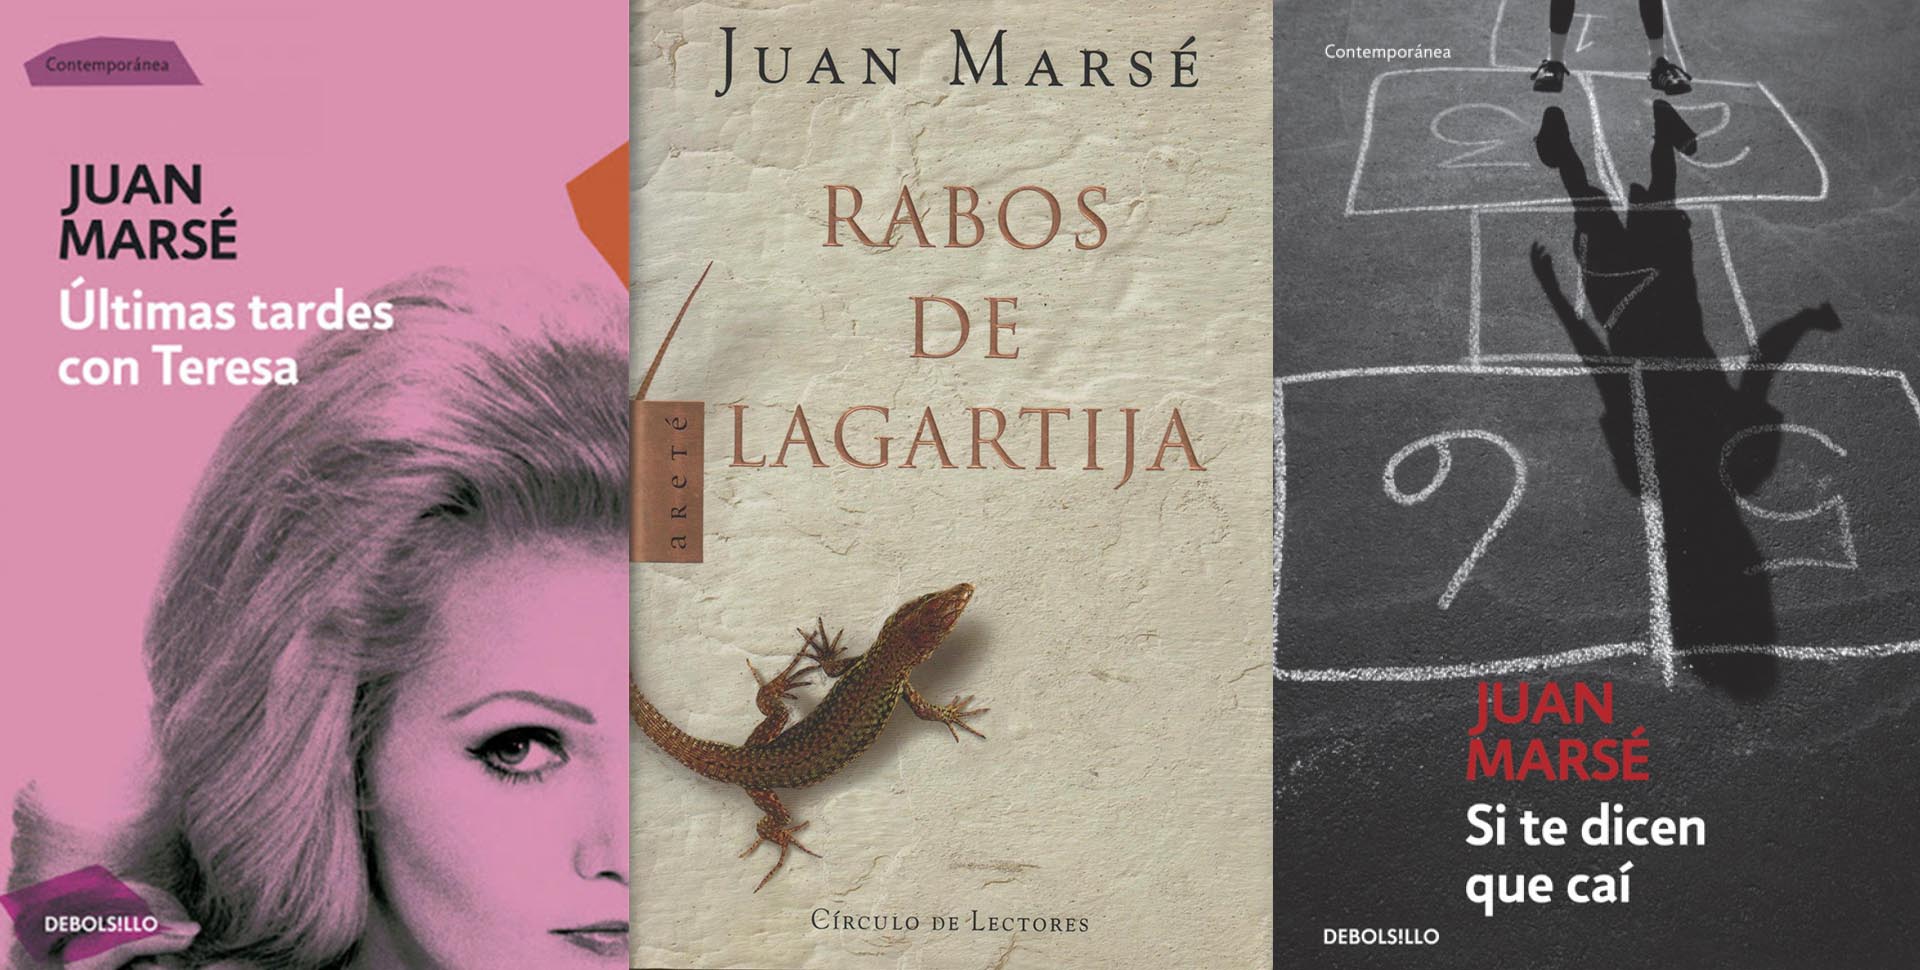 Murió Juan Marsé, escritor clave de la literatura española - Infobae